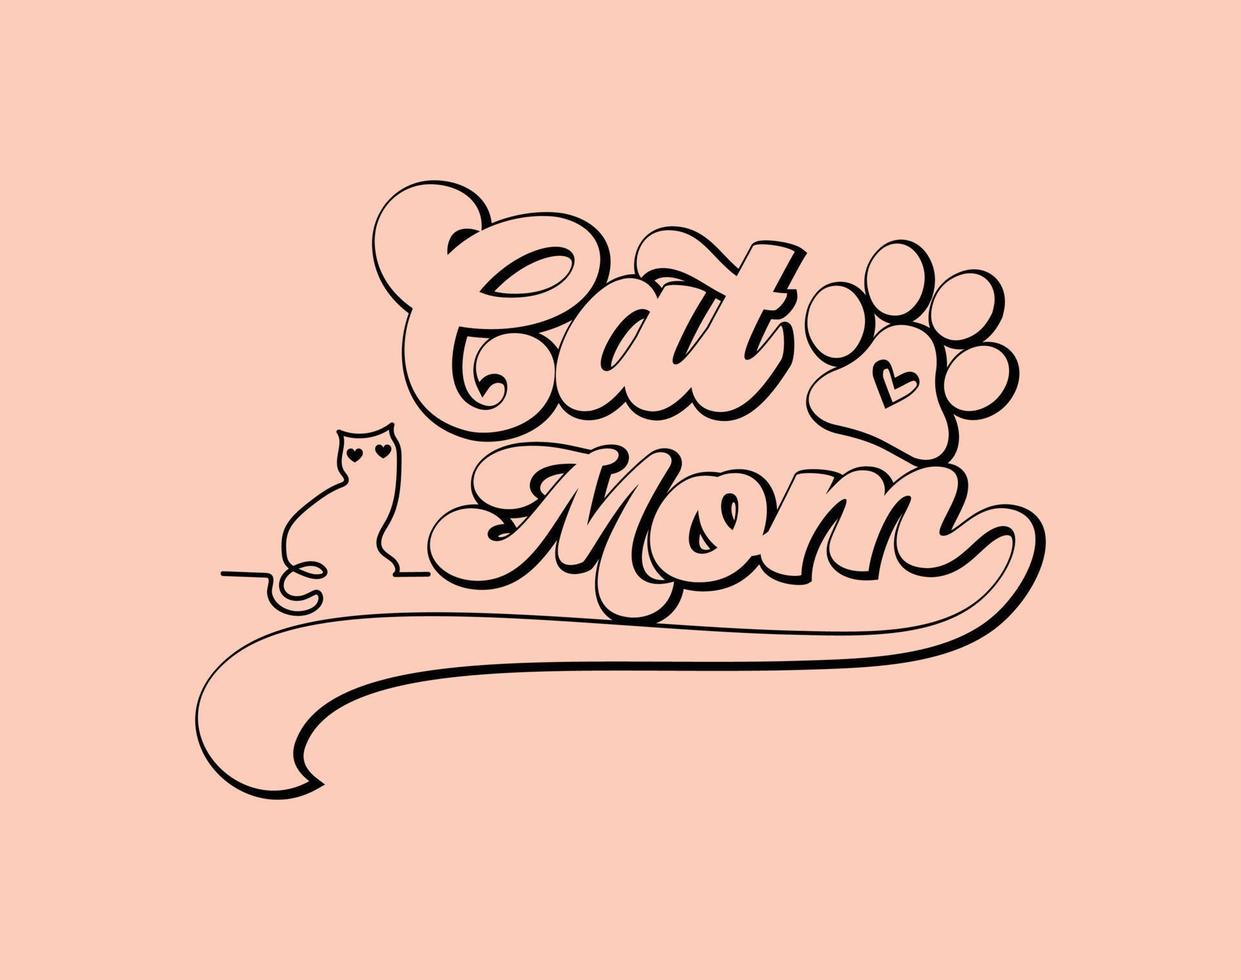 katt mamma, typografi t-shirt vektor konst för mors dag, mamma, mamma, svg, typografi t skjorta design